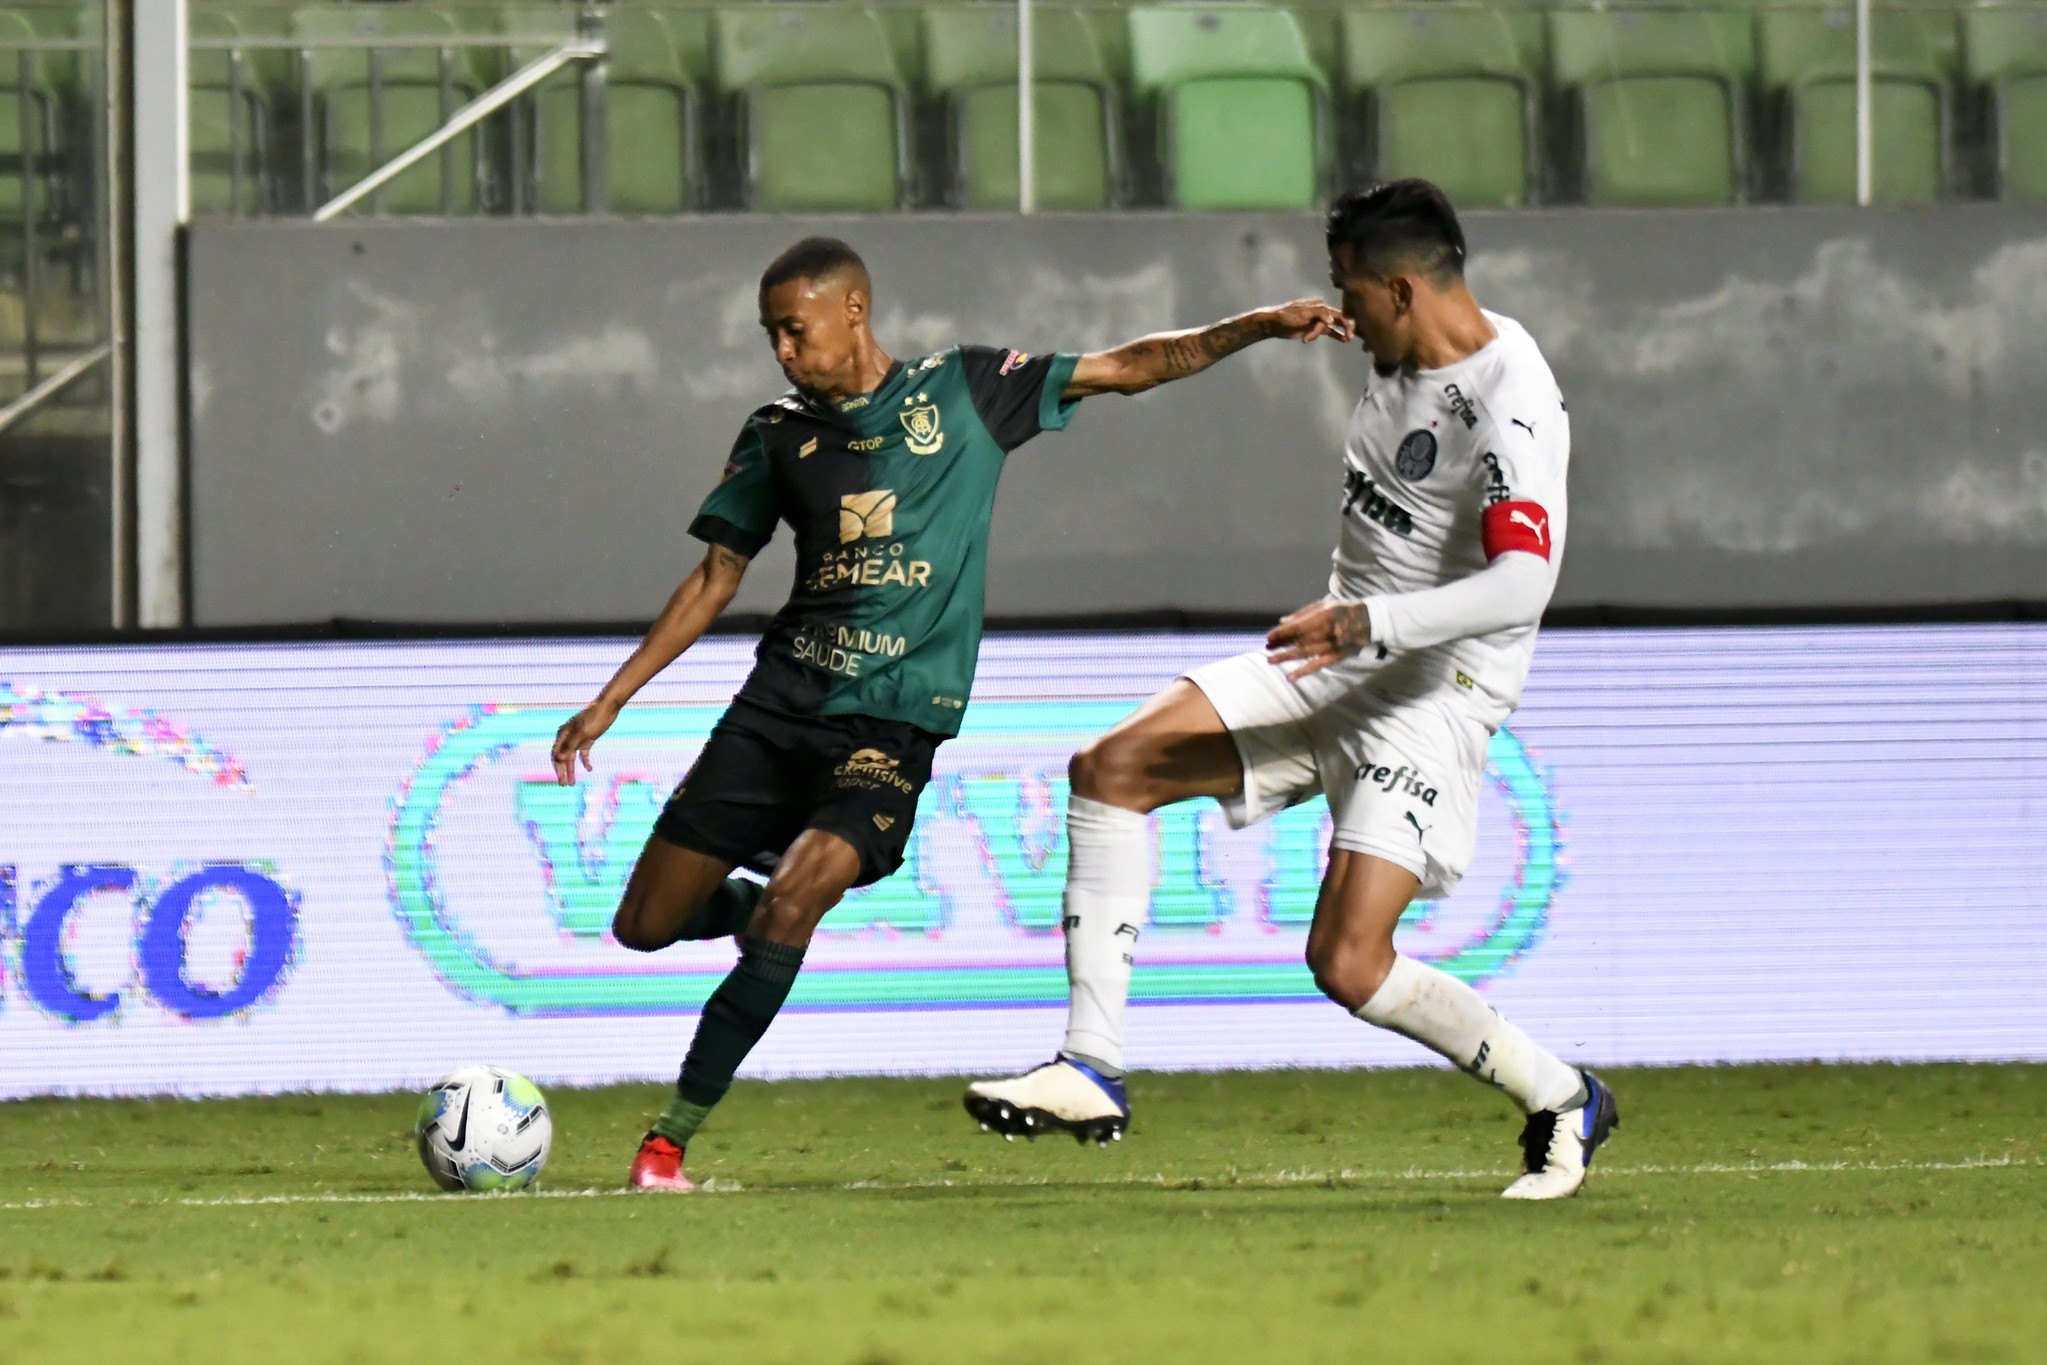 Se pontuar contra o Palmeiras, América-MG passará por "pior sequência" invicto